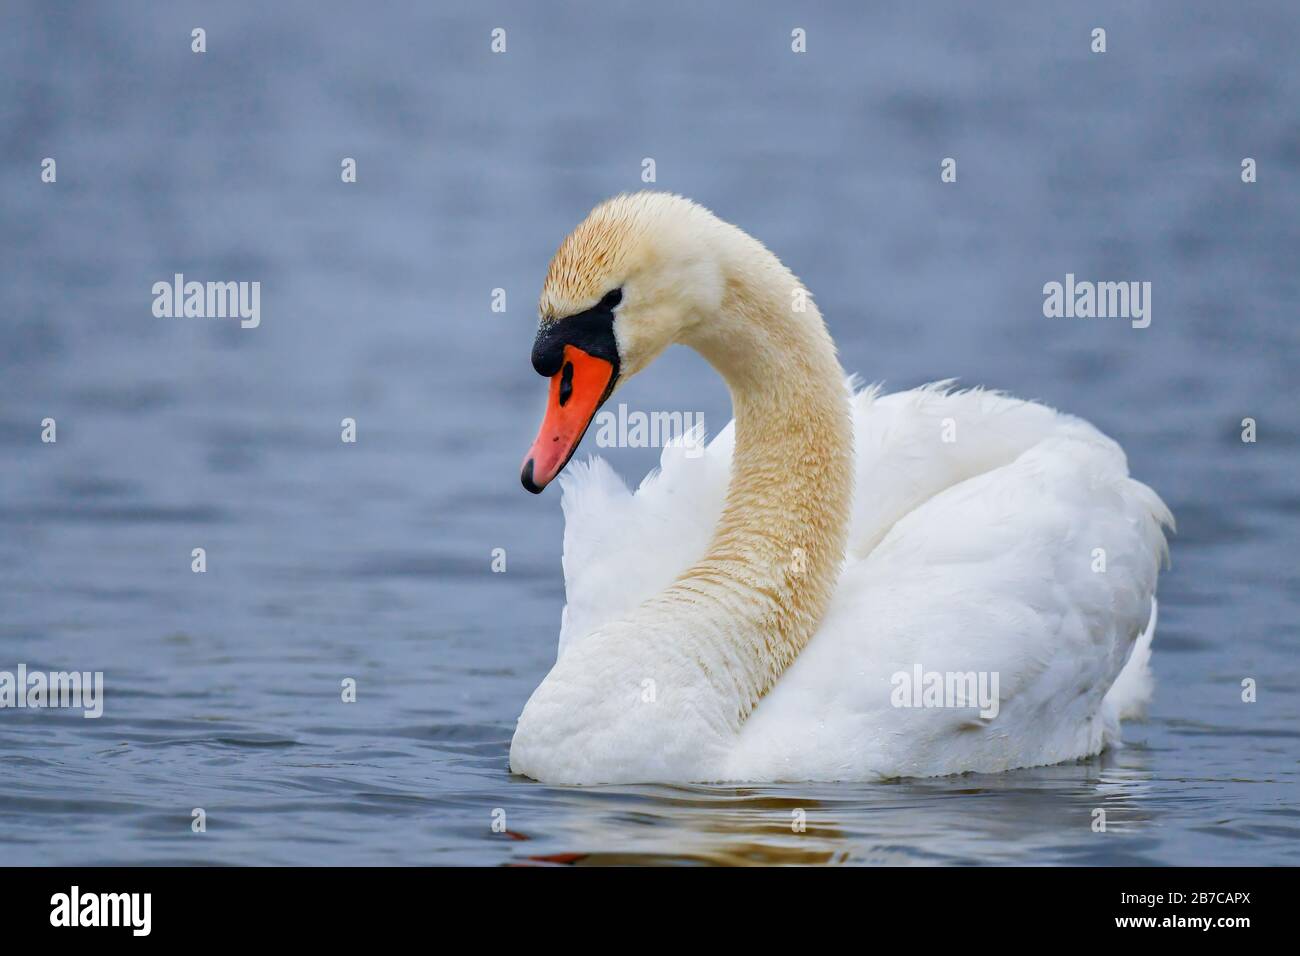 Muet Swan - Cygnus olor, magnifique grand oiseau d'eau blanche des lacs européens et des eaux fraîches, Hortobagy, Hongrie. Banque D'Images